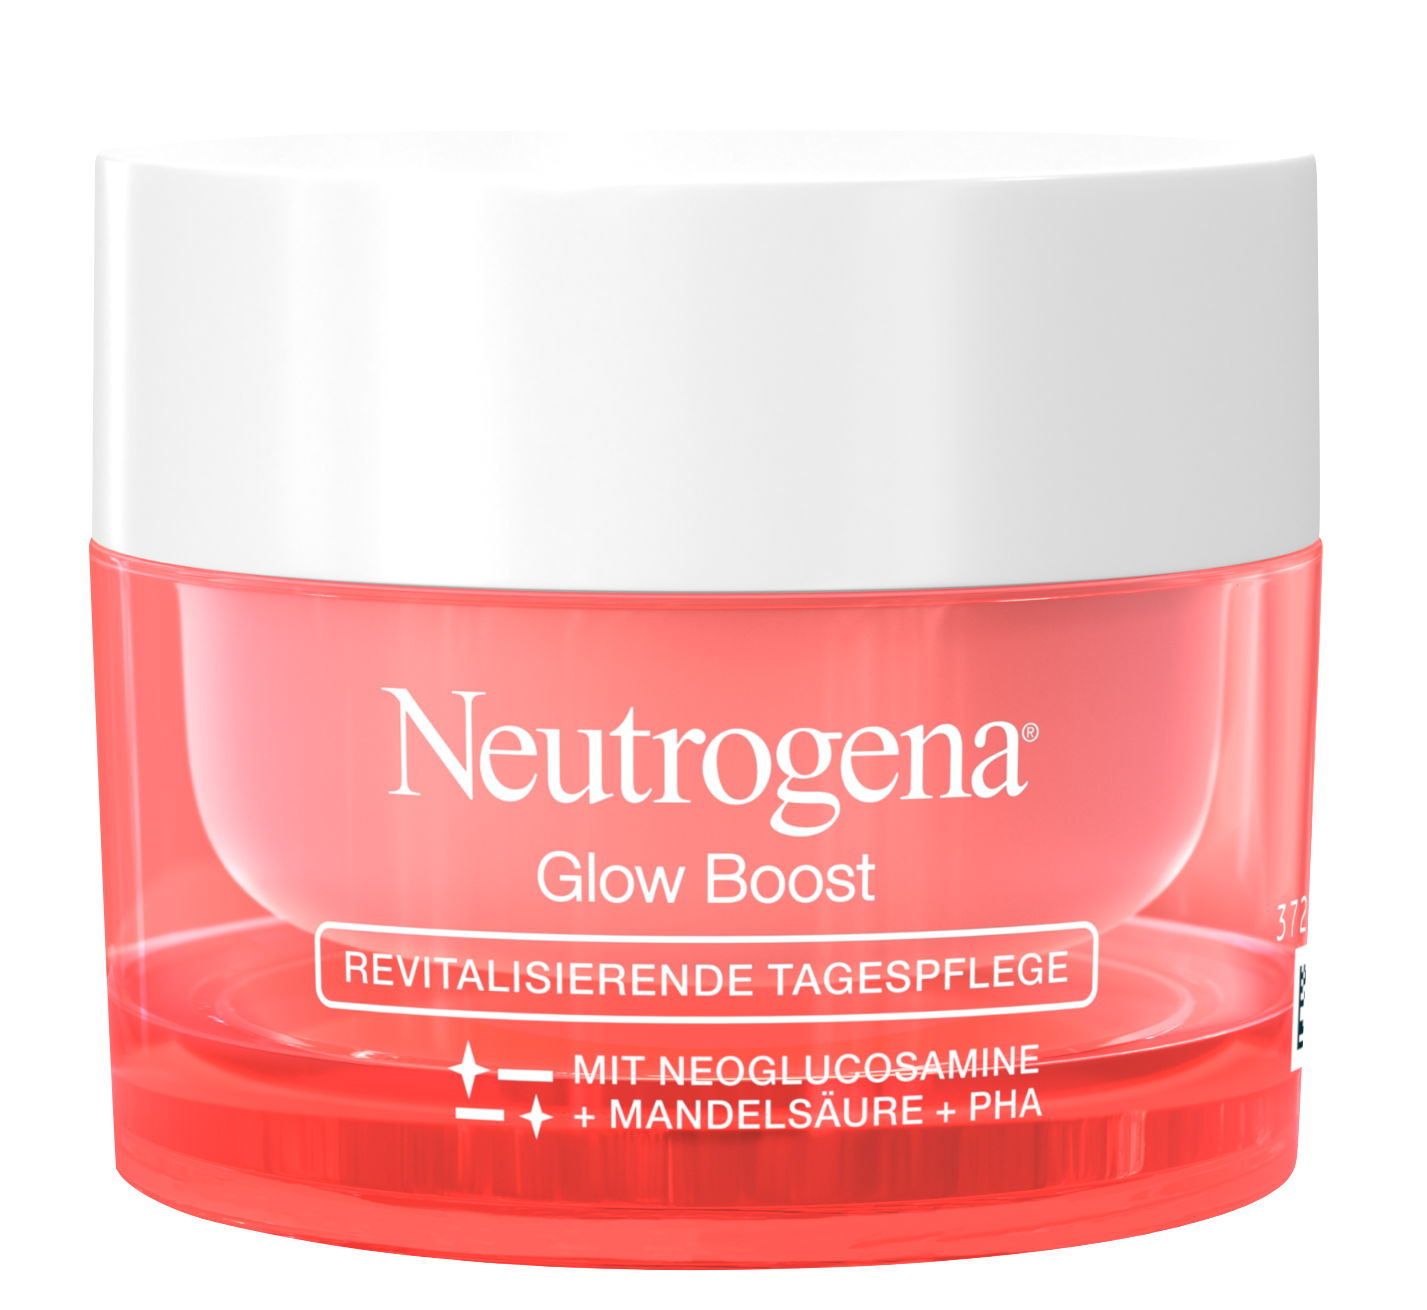 Neutrogena Glow Boost Revitalisierende Tagespflege, 50 ml, UVP* 12,99 EUR